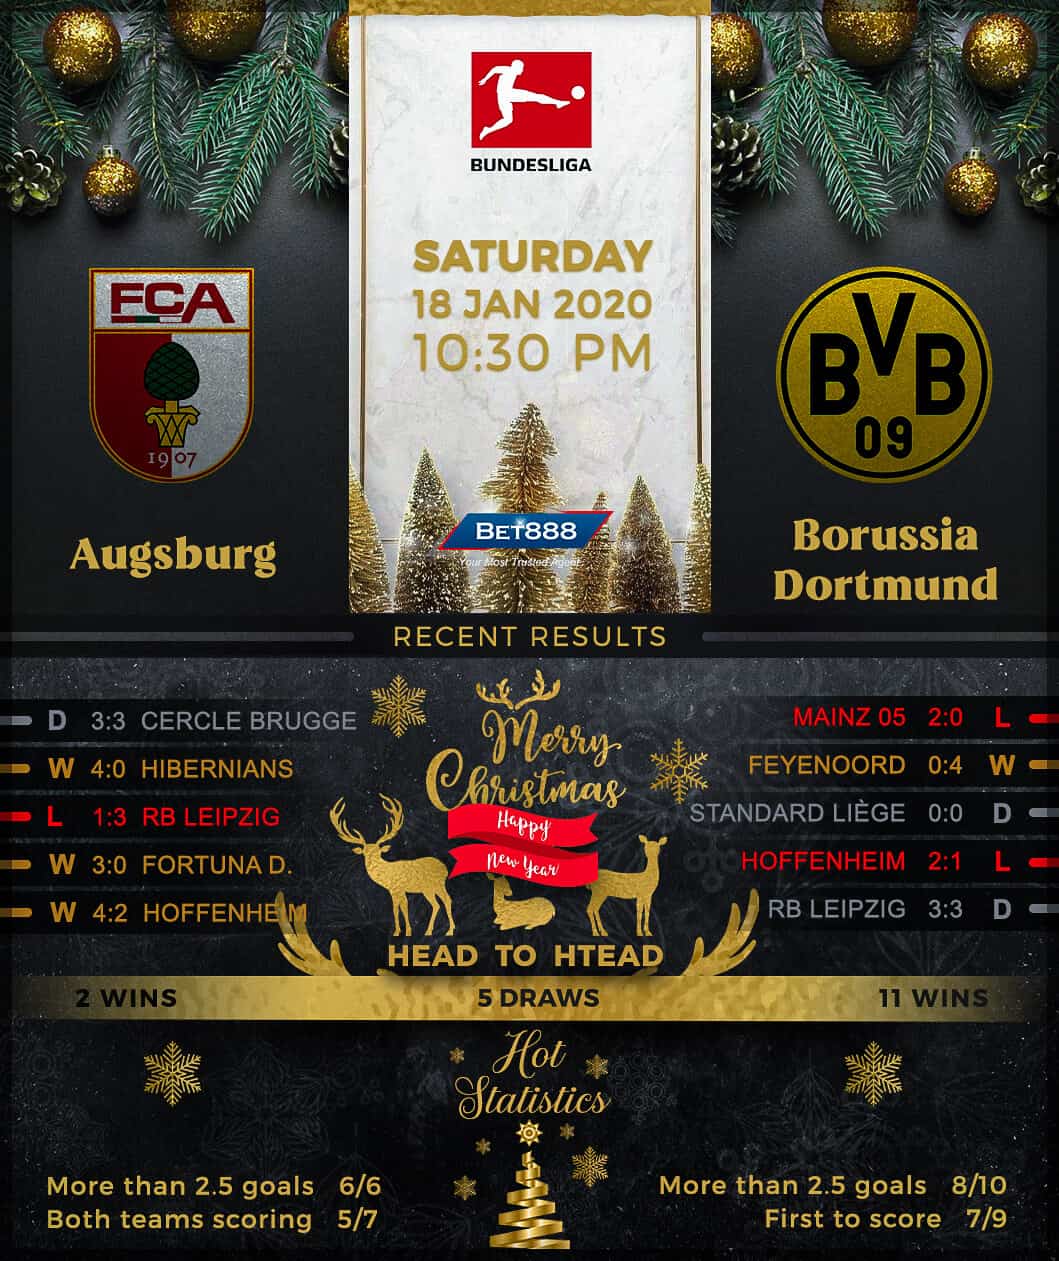 Augsburg vs Borussia Dormtund﻿ 18/01/20